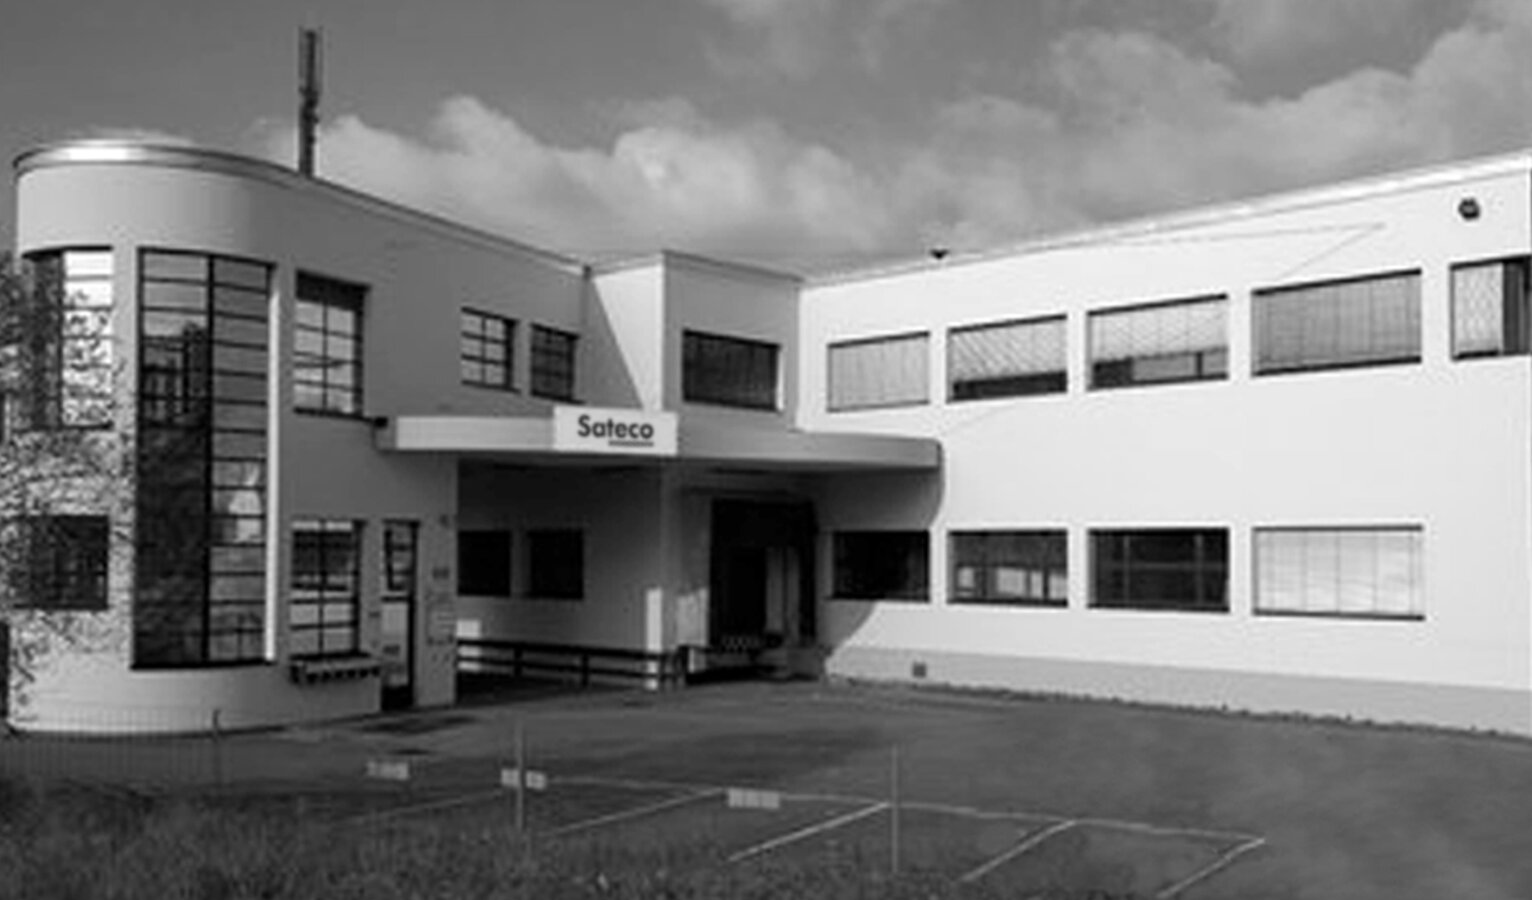 Schwarzweissfoto vom Gebäude am Standort Uster